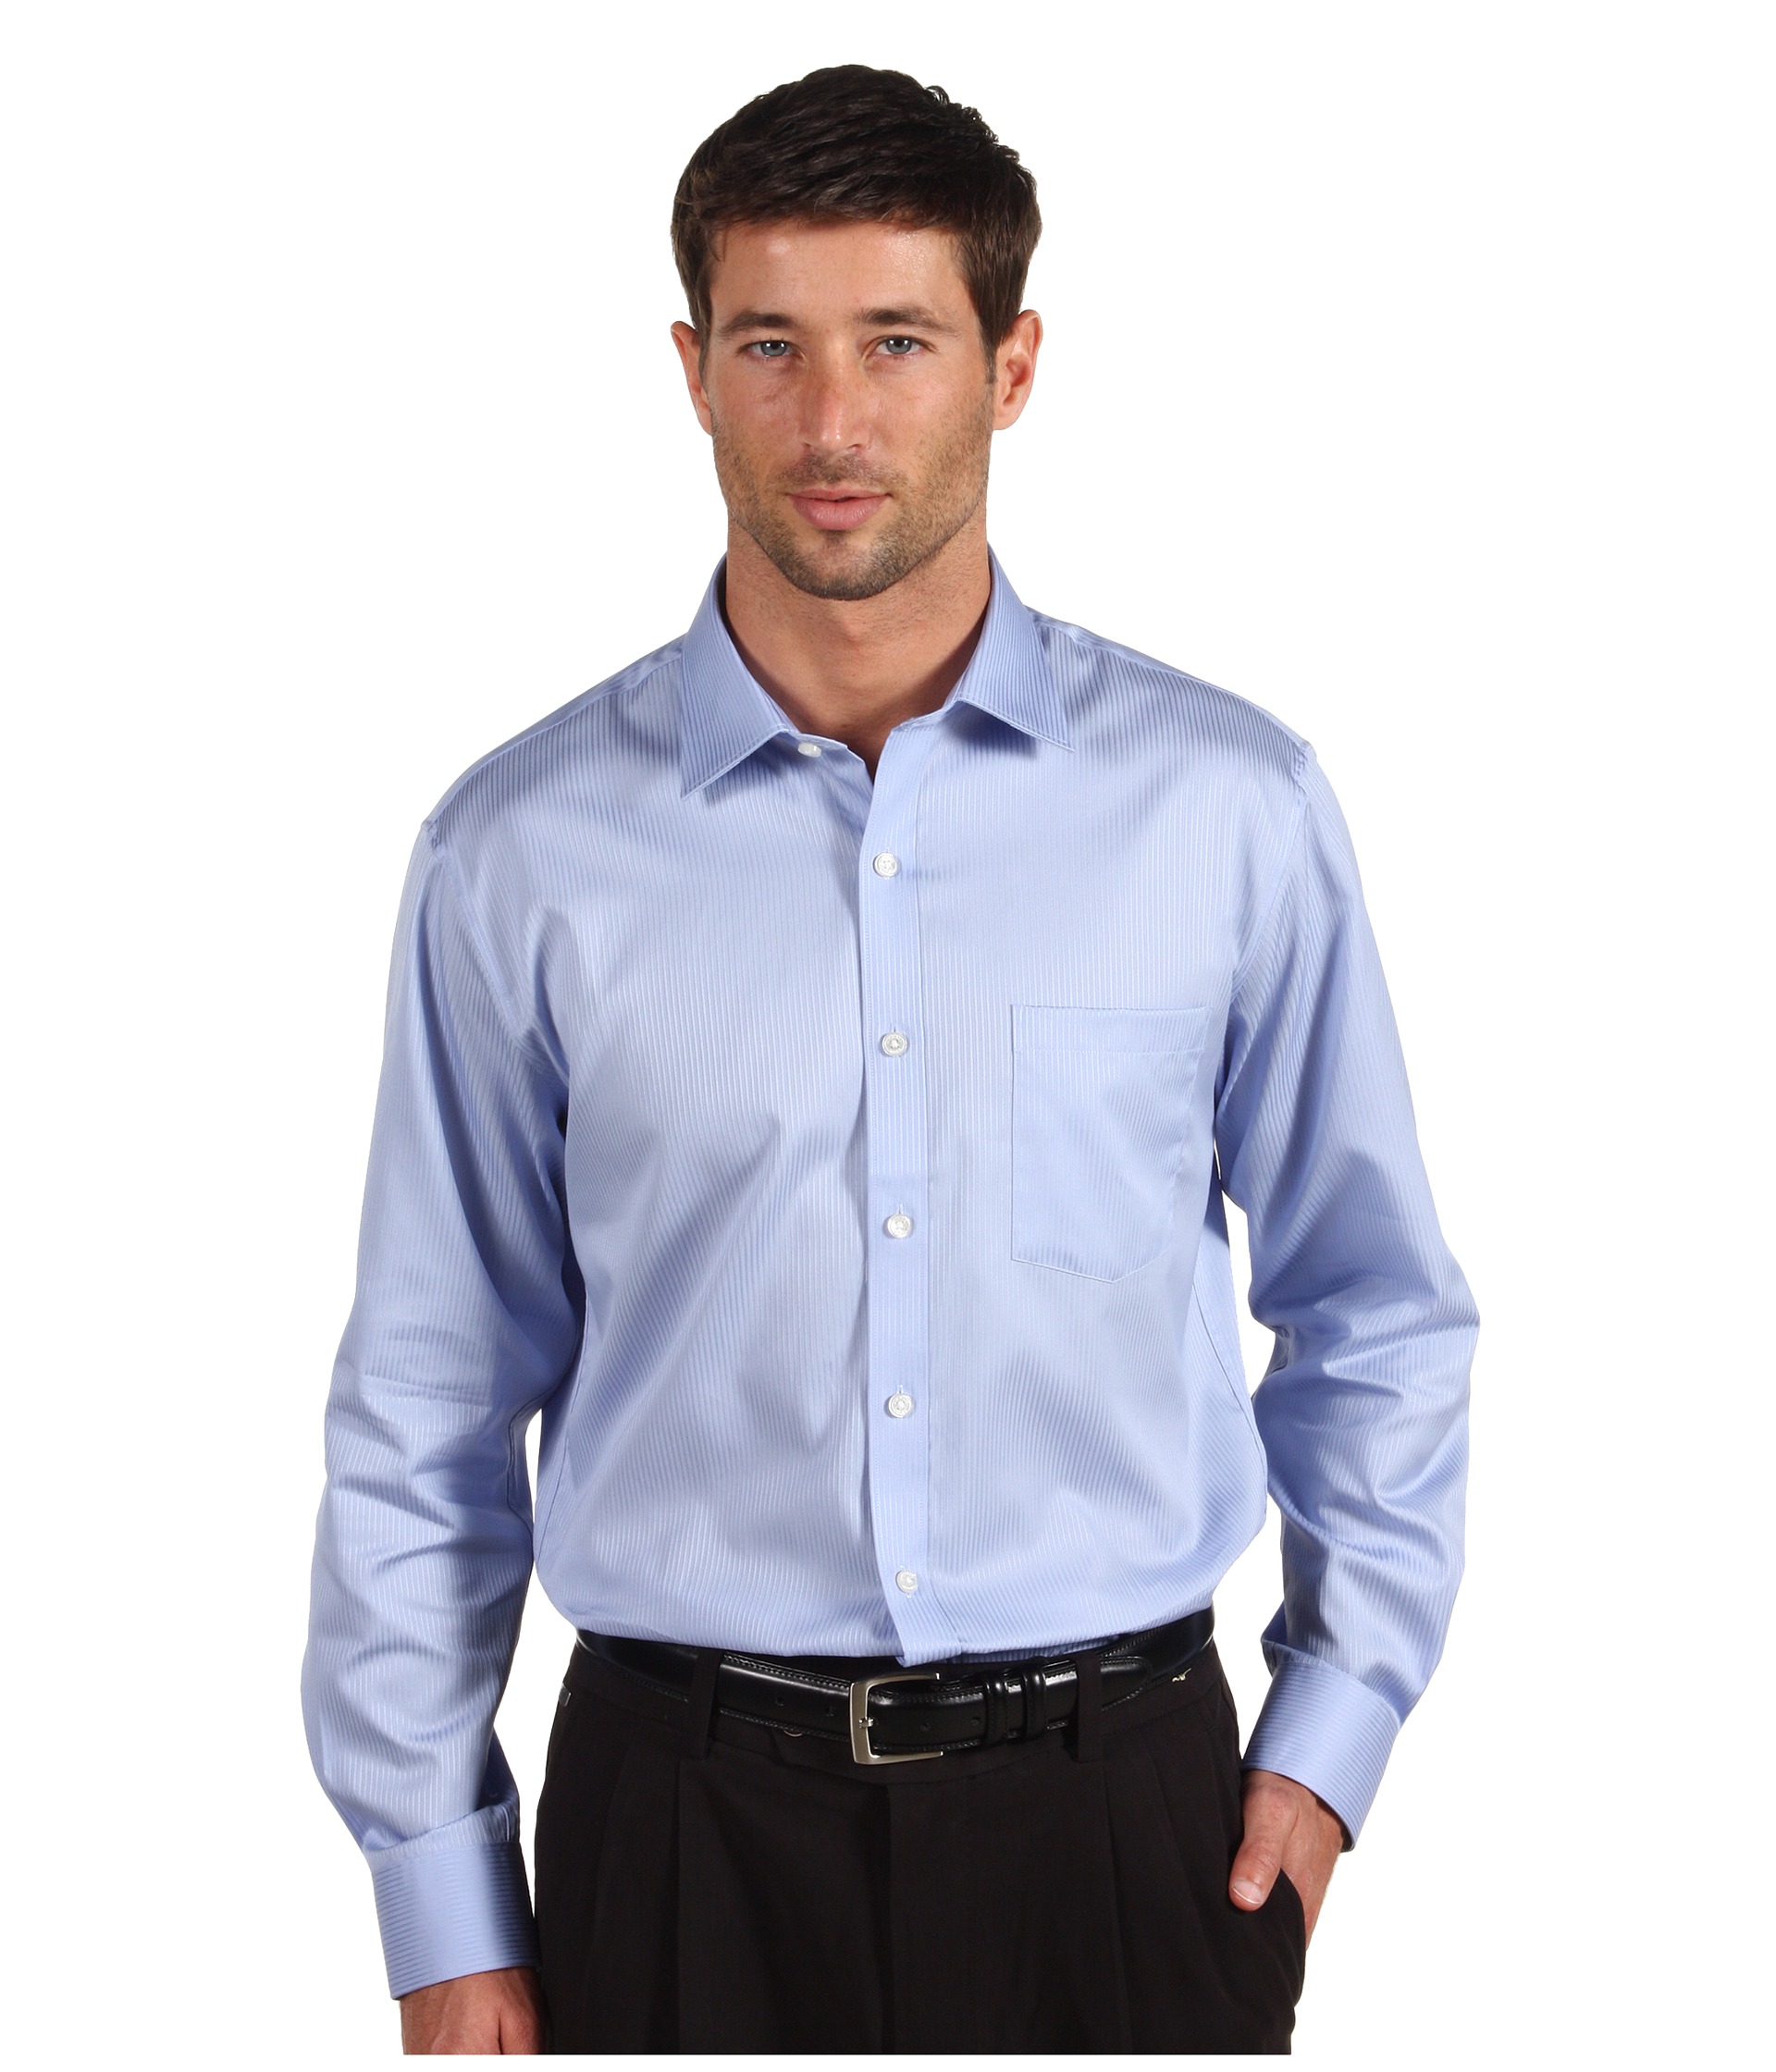 Michael Kors Modern Twill Cotton Shirt $66.99 ( 39% off MSRP $110.00)